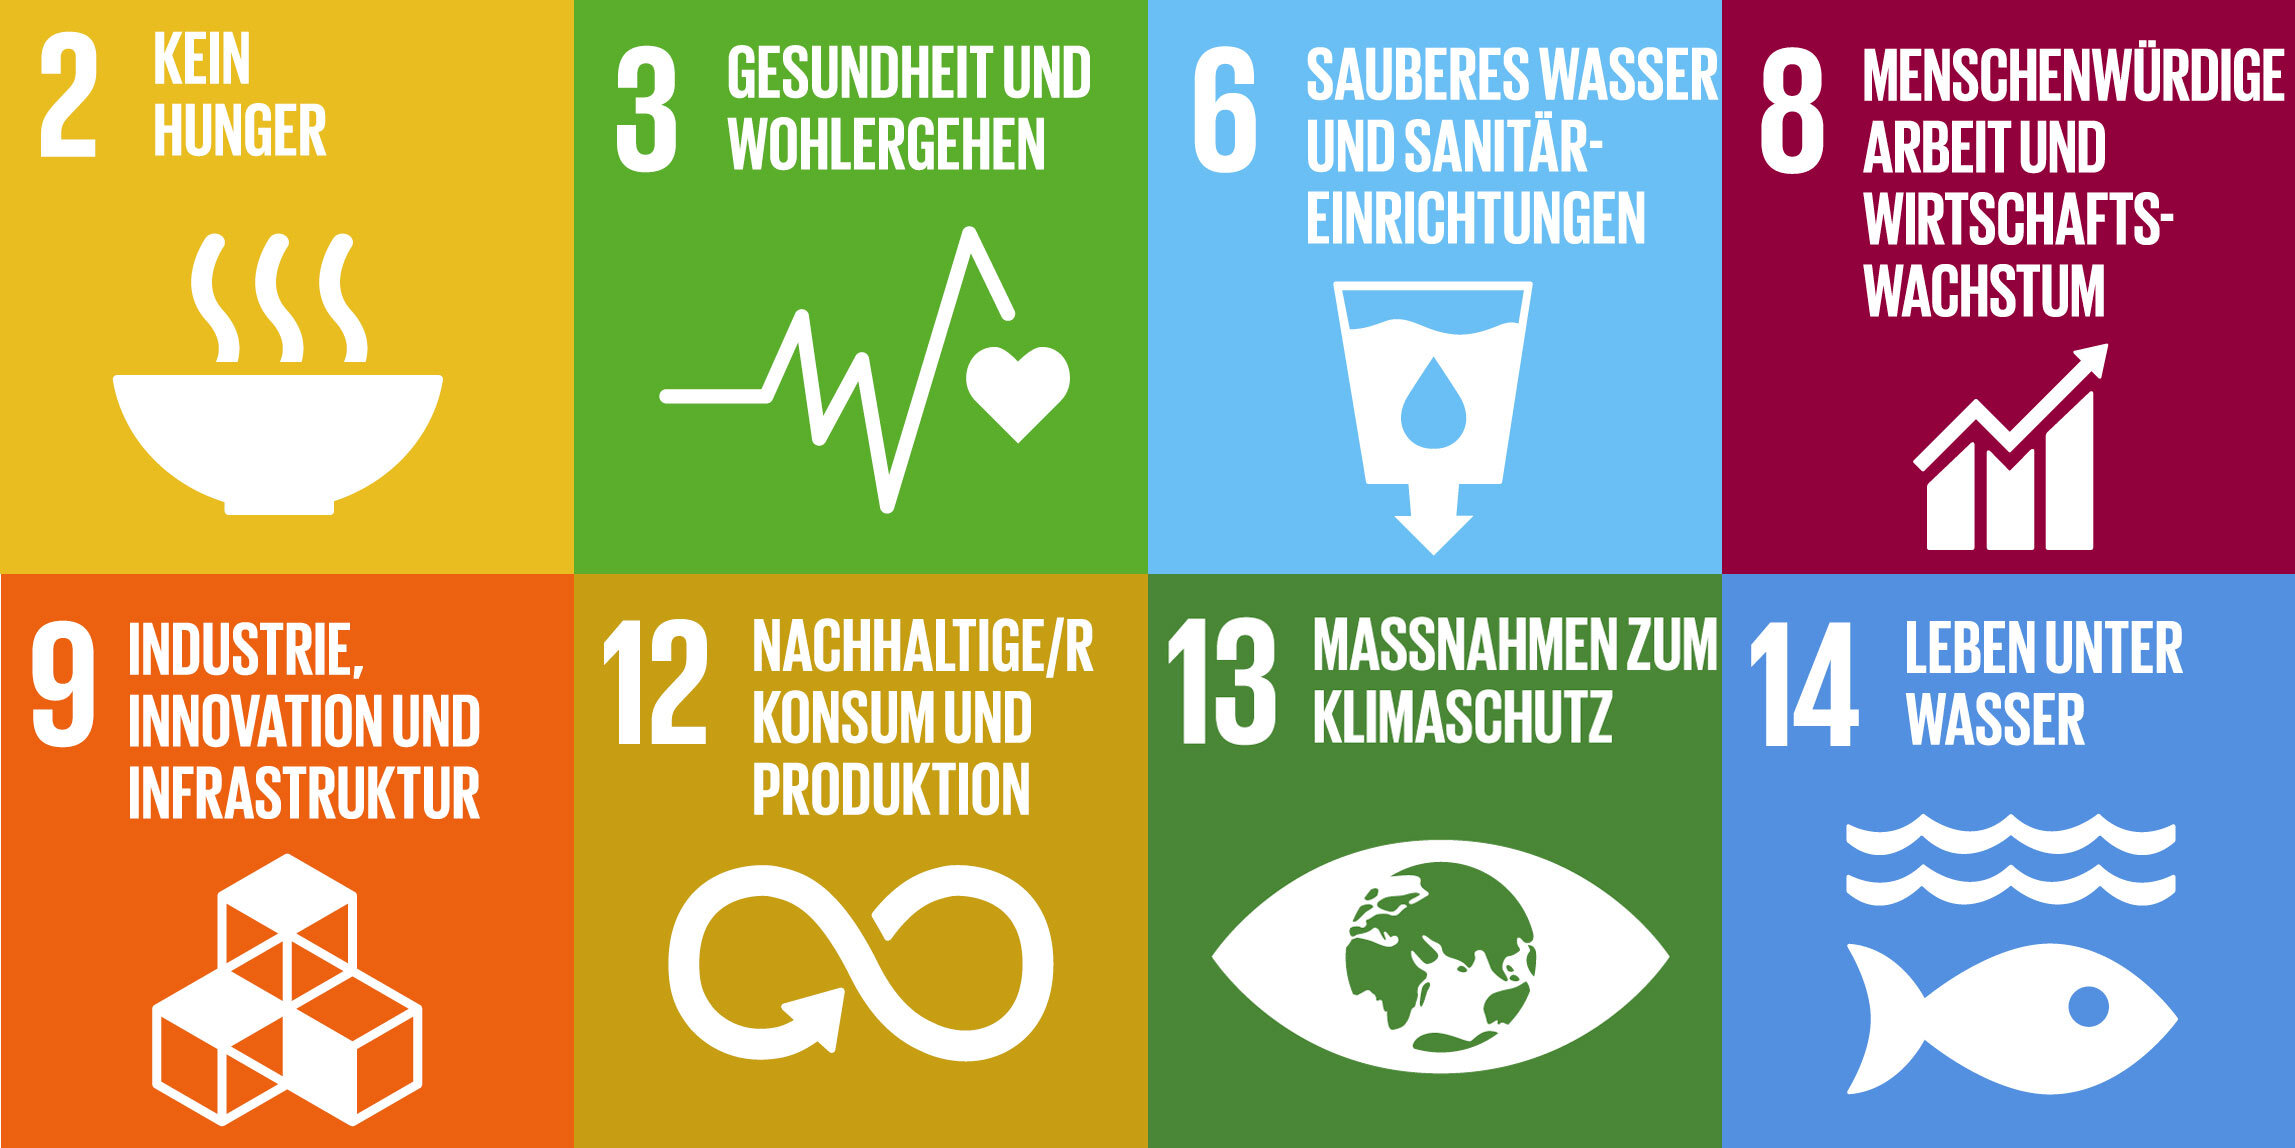 UNO Agenda 2030.jpg